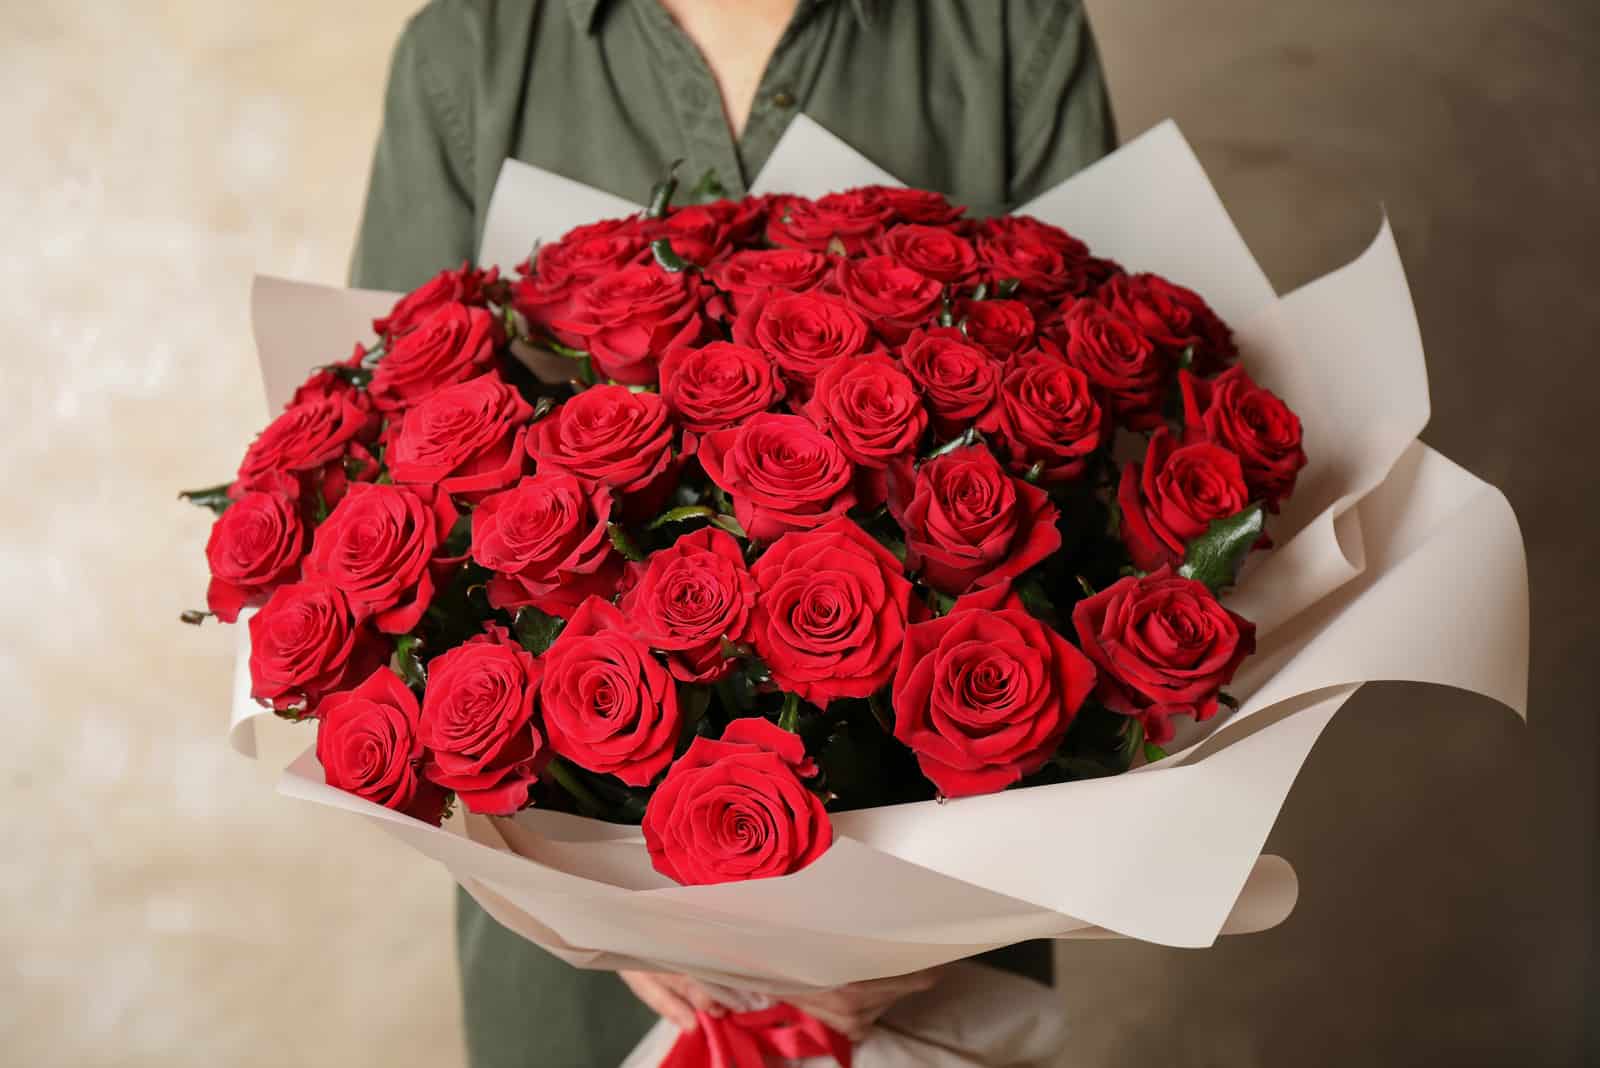 donna con in mano un grande bouquet di rose rosse